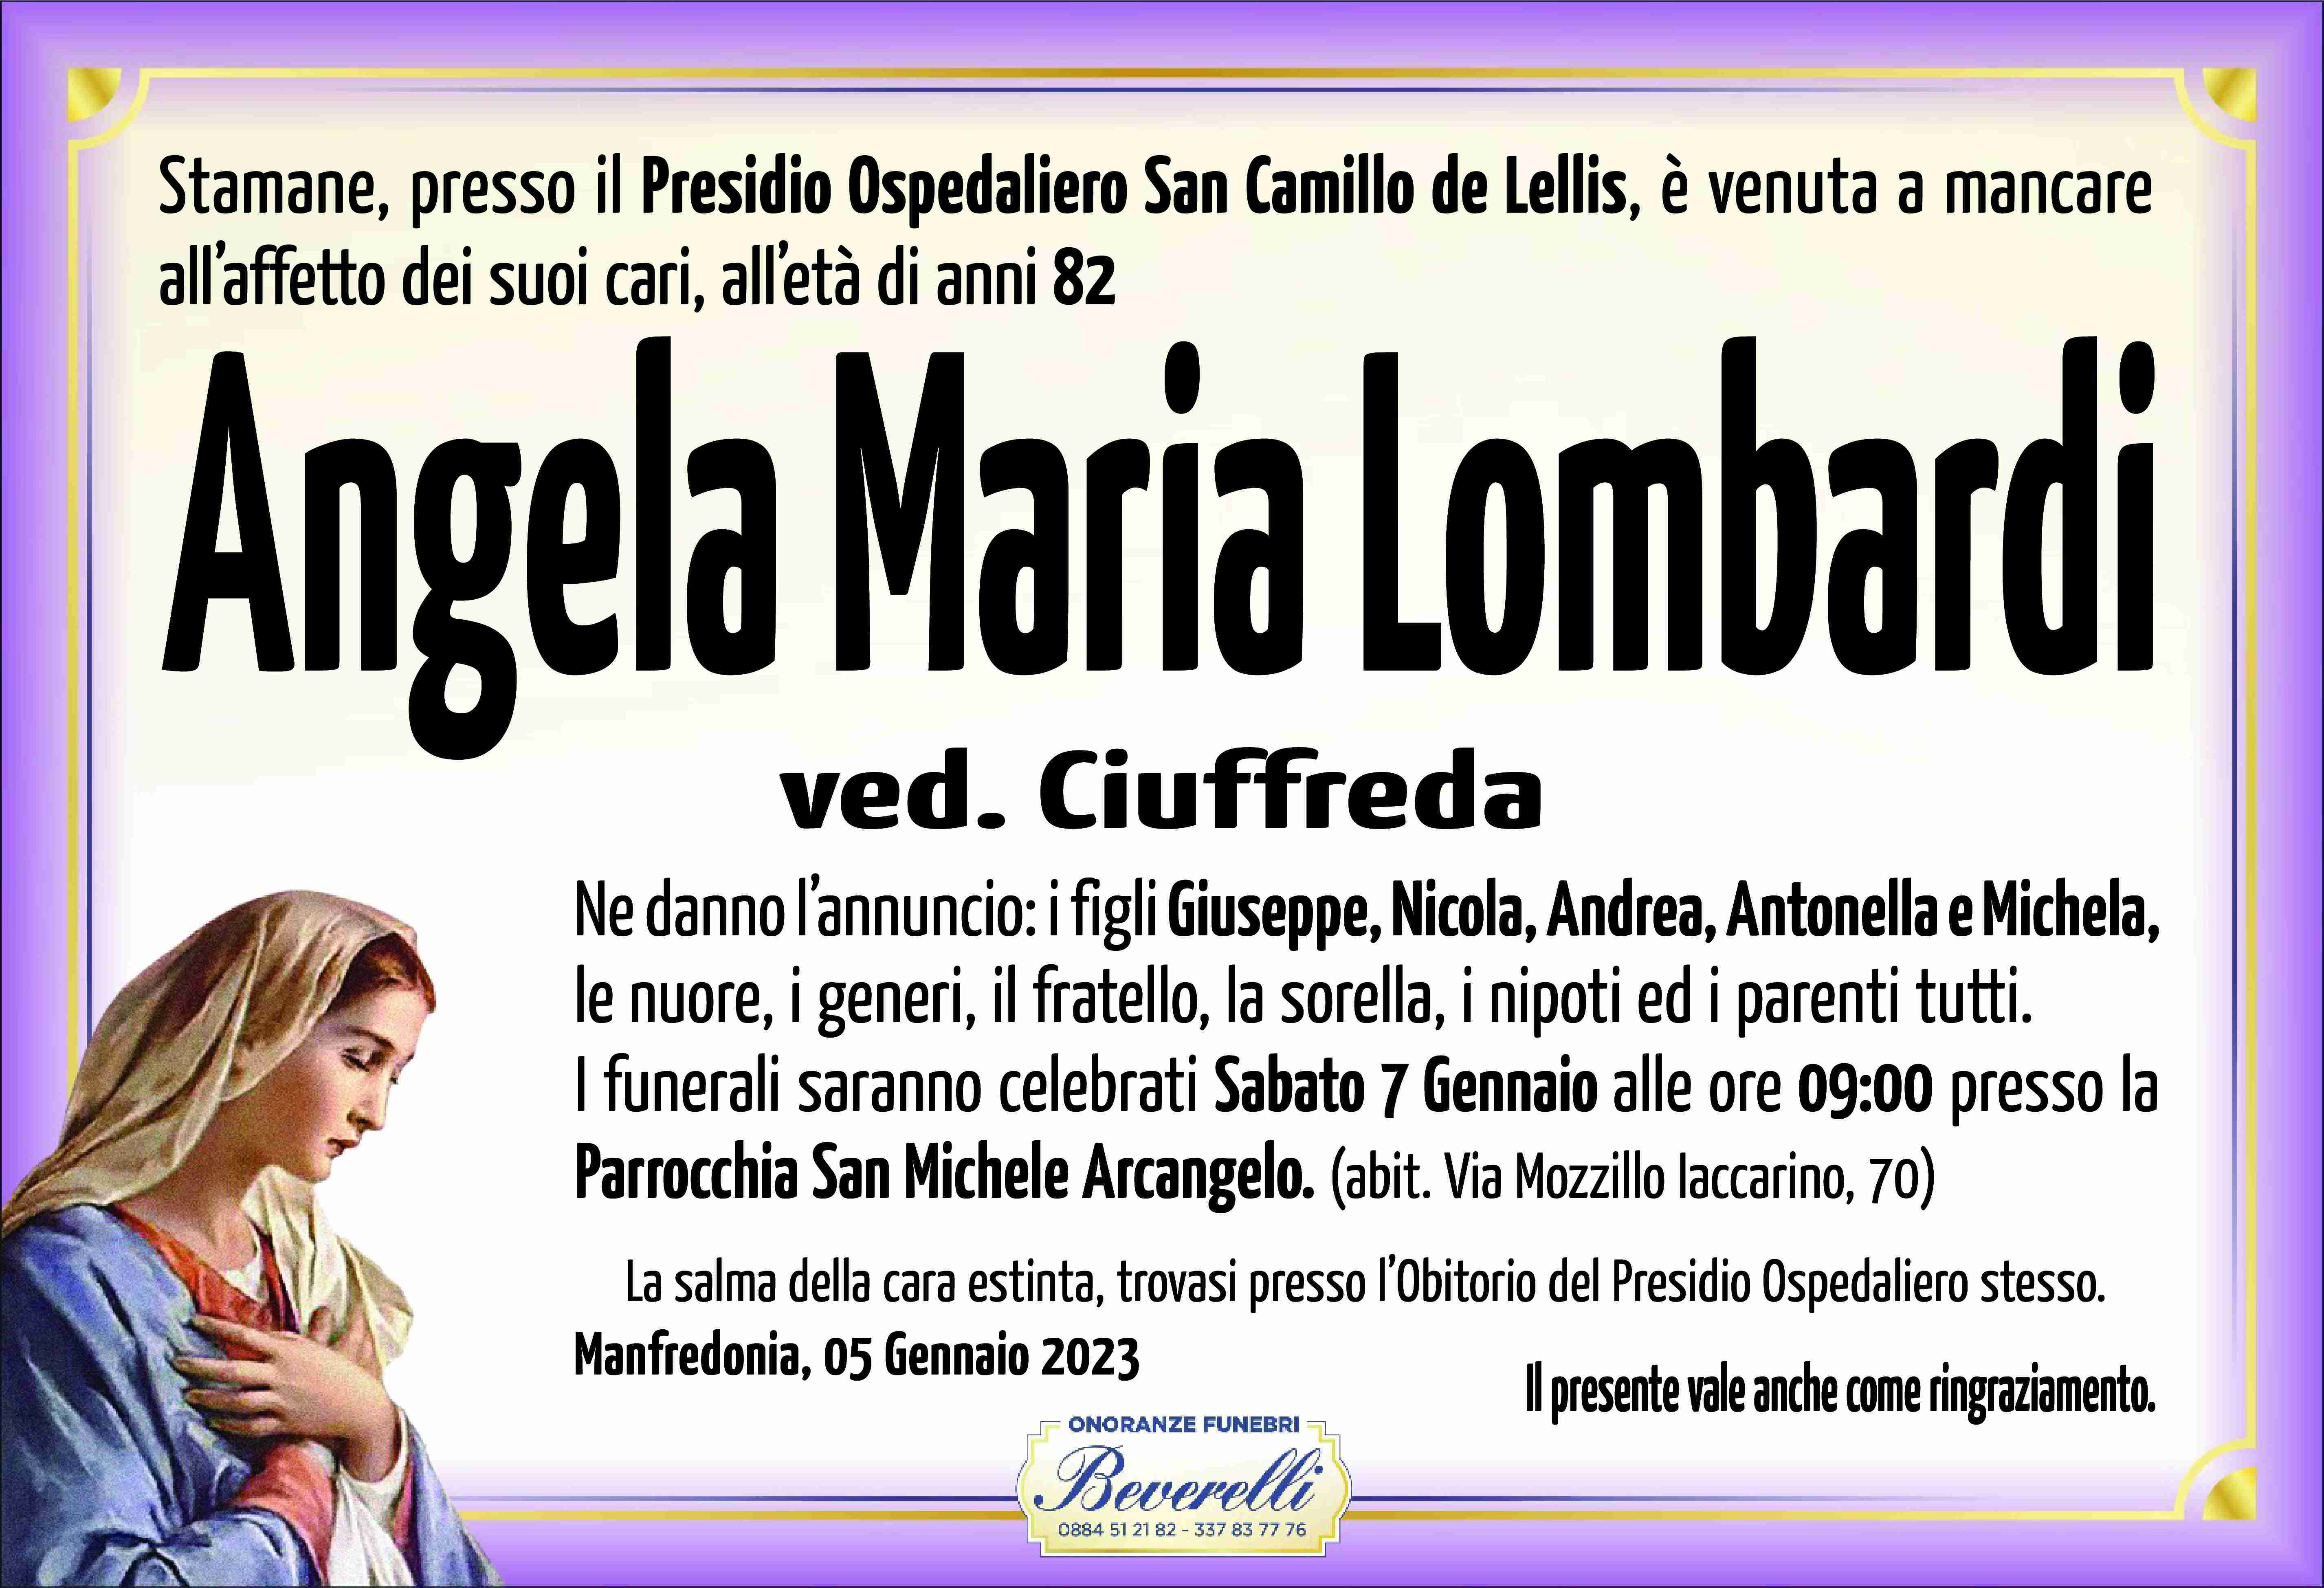 Angela Maria Lombardi